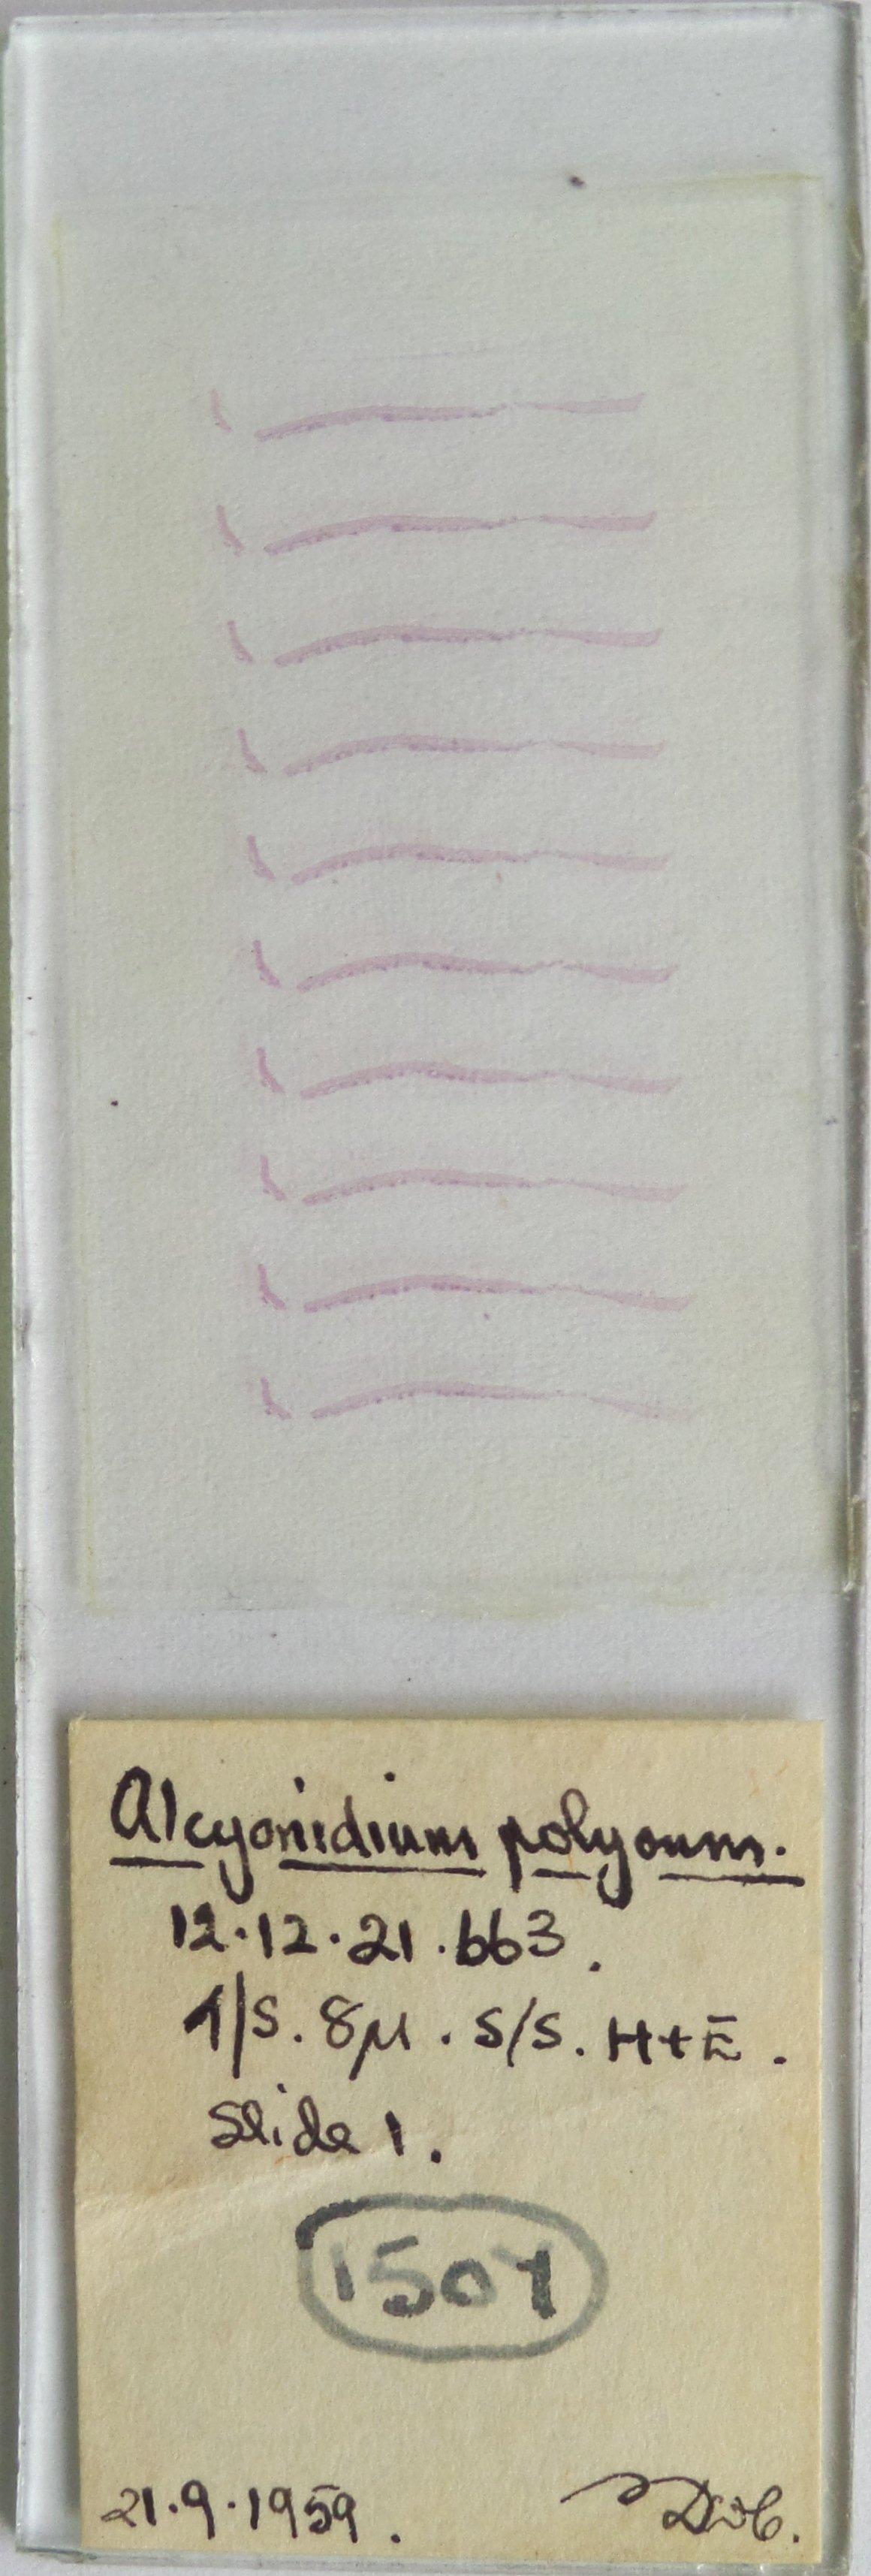 To NHMUK collection (Alcyonidium polyoum (Hassall, 1841); NHMUK:ecatalogue:697354)